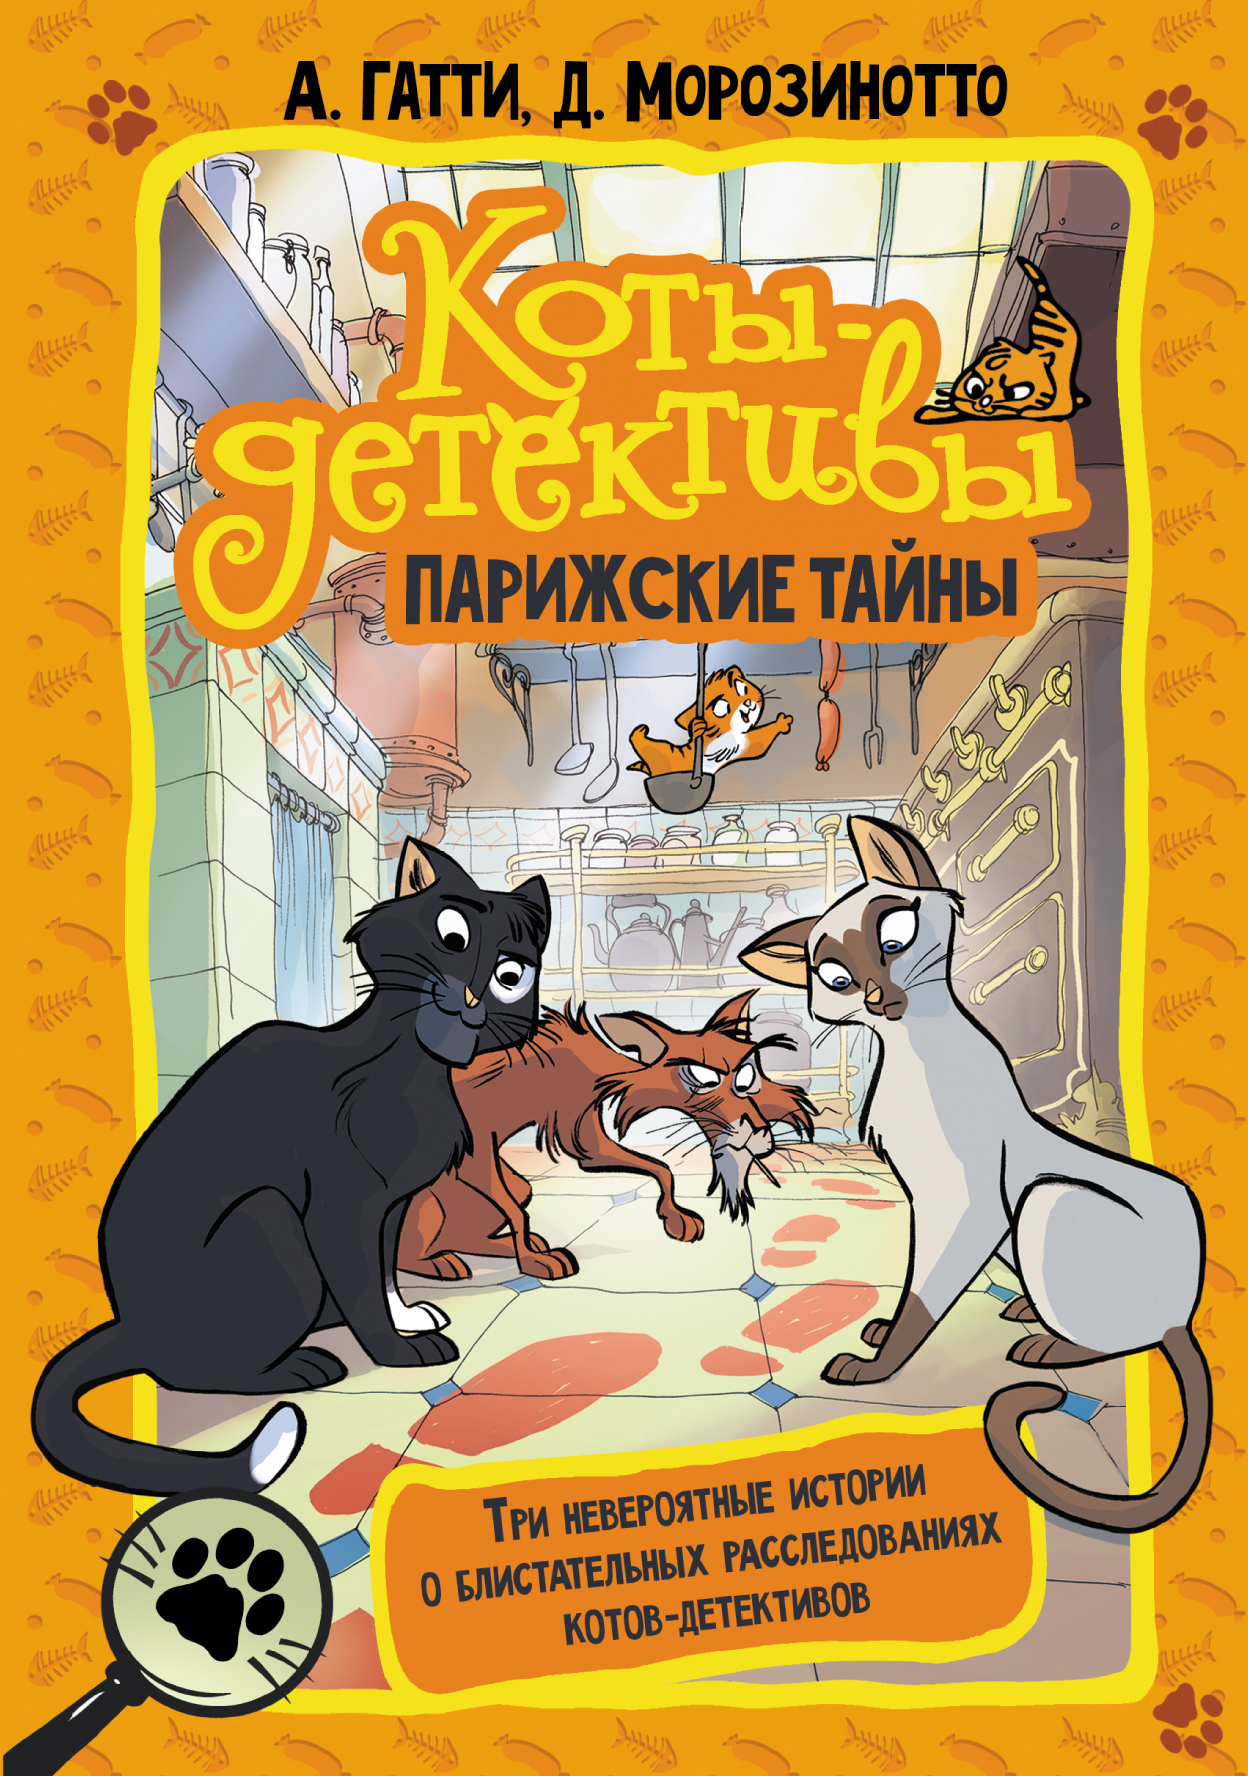 Коты-детективы. Бесстрашная команда, Давиде Морозинотто – скачать книгу  fb2, epub, pdf на ЛитРес